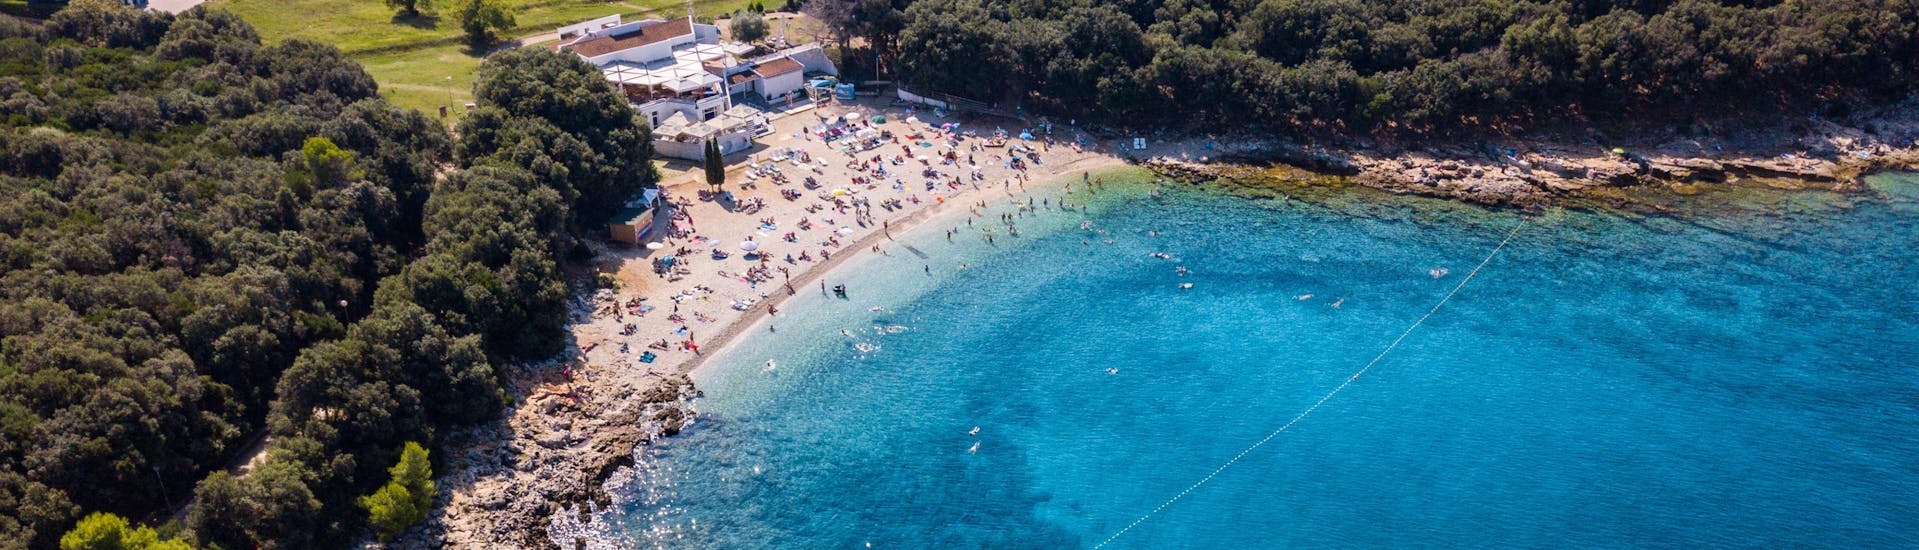 Mensen vermaken zich op het strand in Verudela in Kroatië.